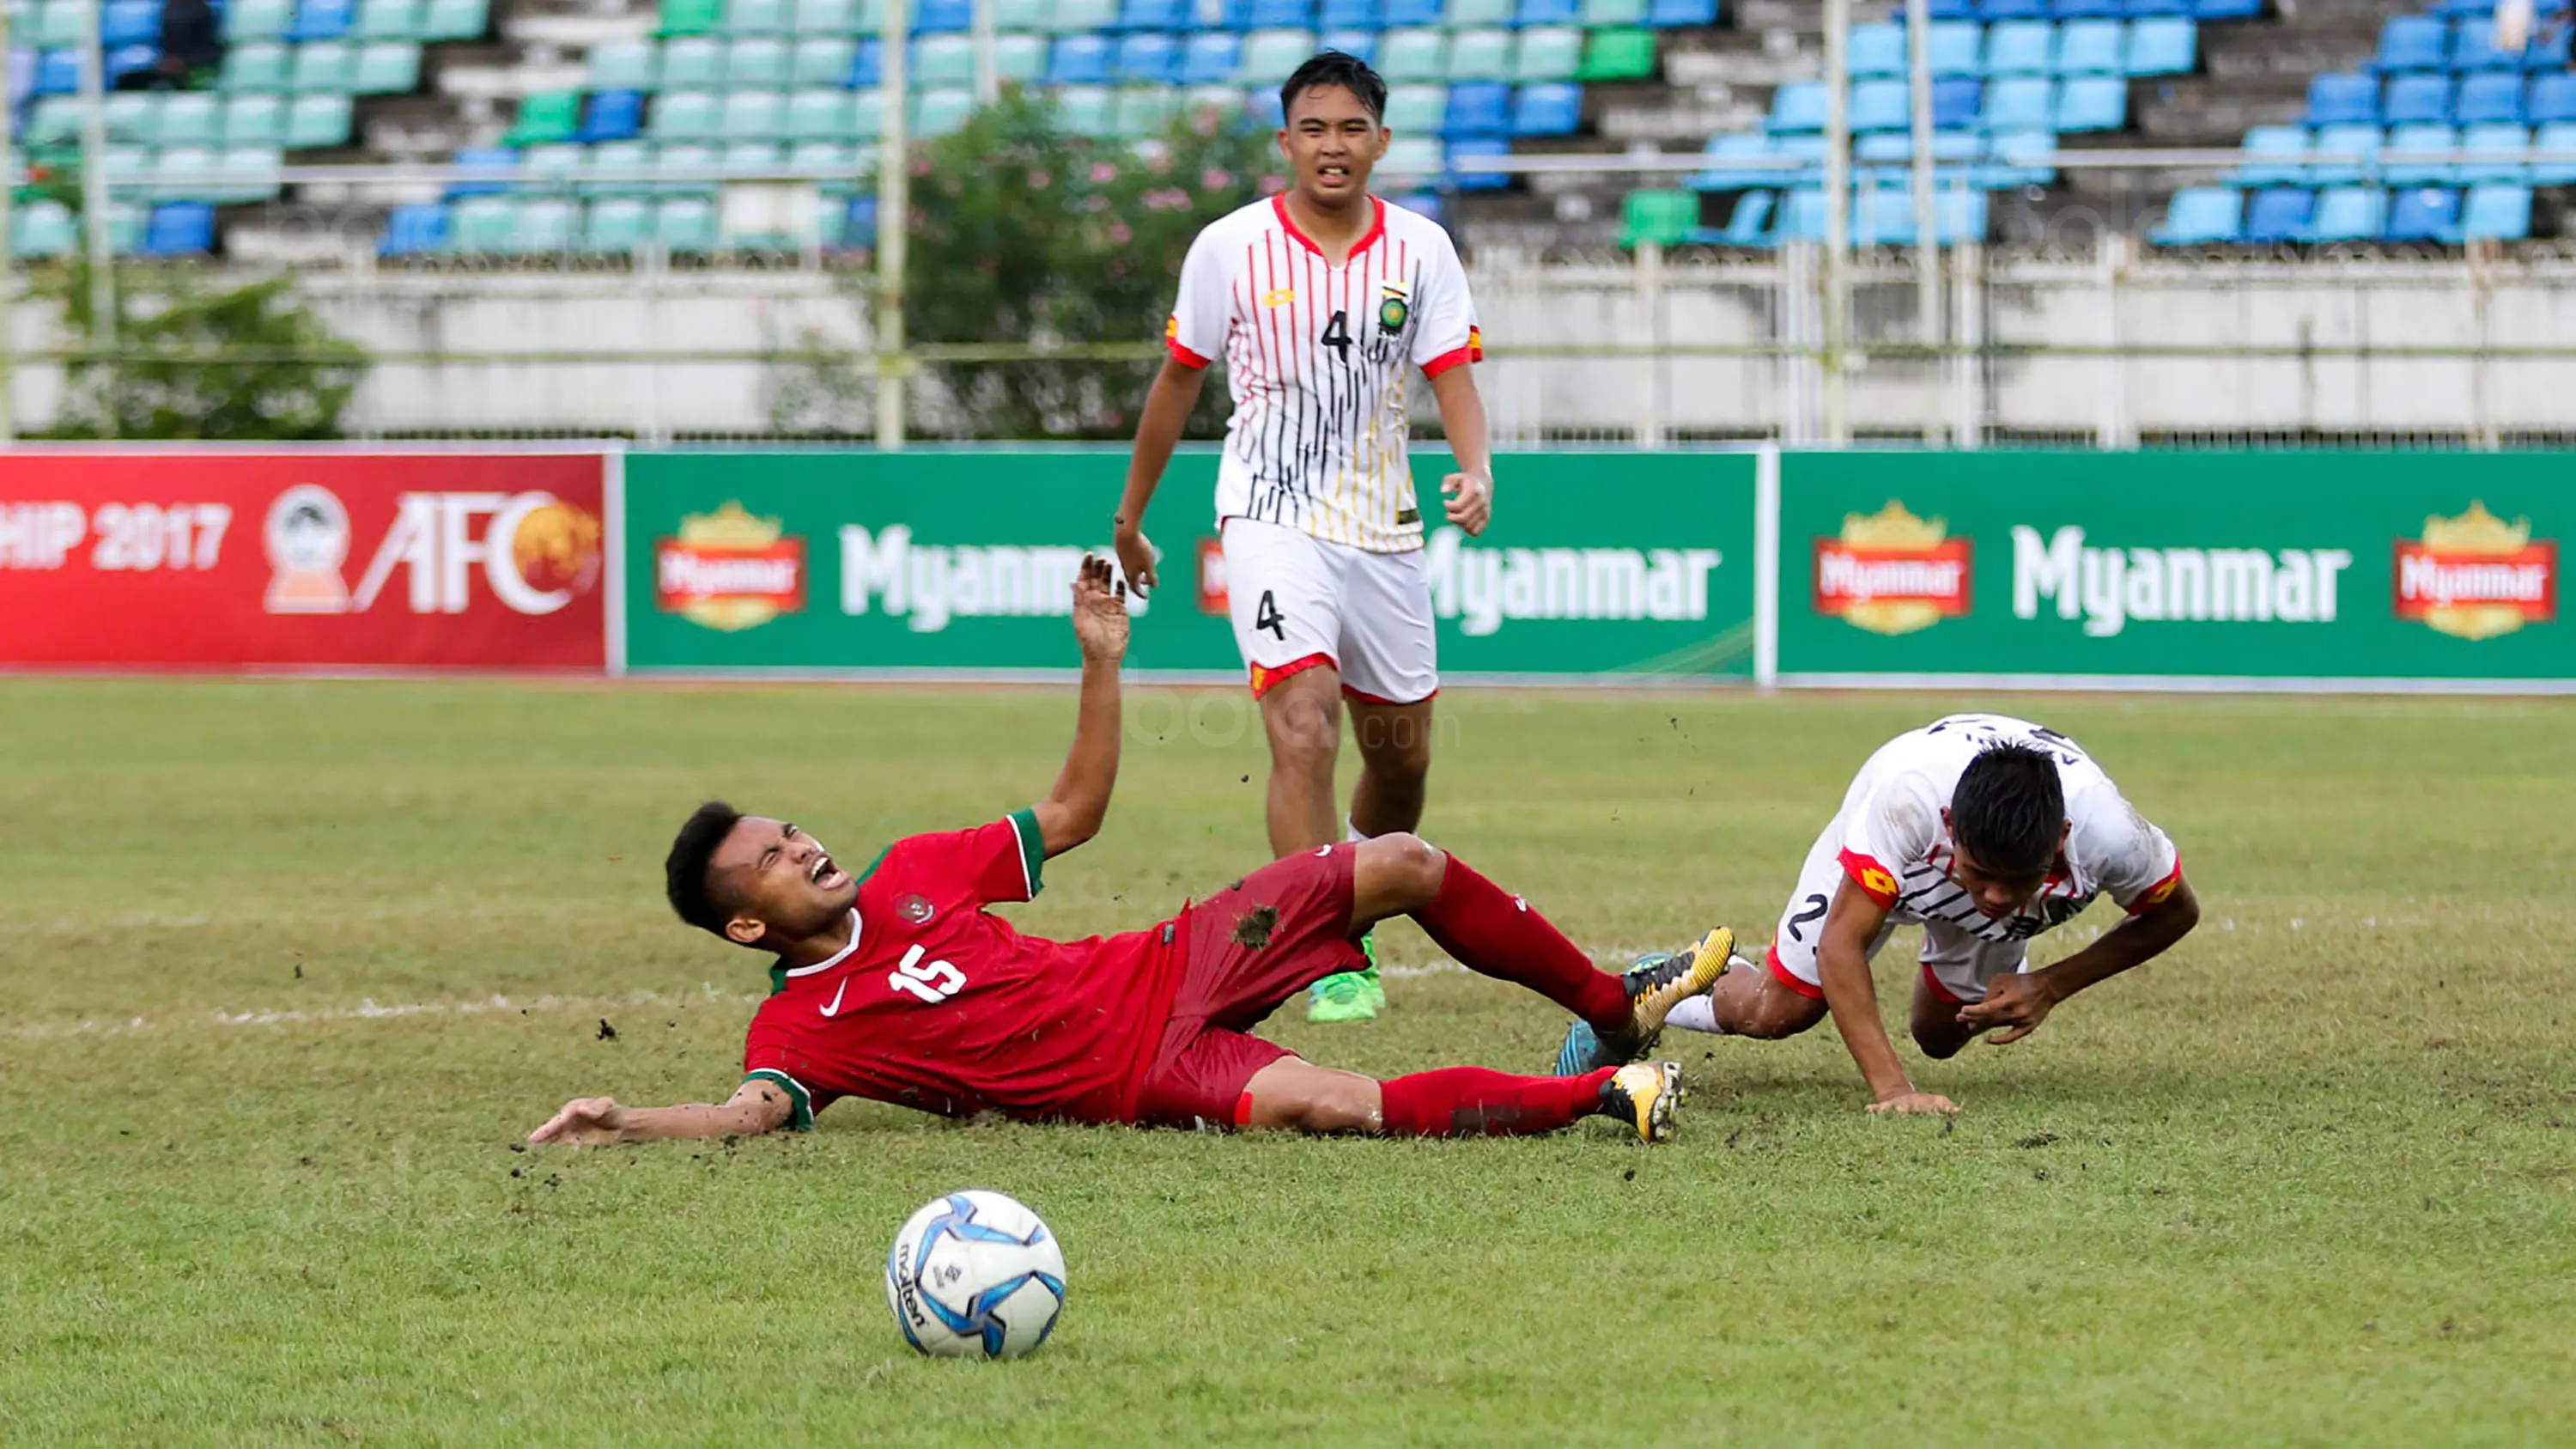 Pemain Timnas Indonesia U-19, Saddil Ramdani, terjatuh saat pertandingan melawan Brunei Darussalam pada laga Piala AFF U-18 di Stadion Thuwunna, Rabu (13/9/2017). Indonesia menang 8-0 atas Brunei Darussalam. (Liputan6.com/Yoppy Renato)